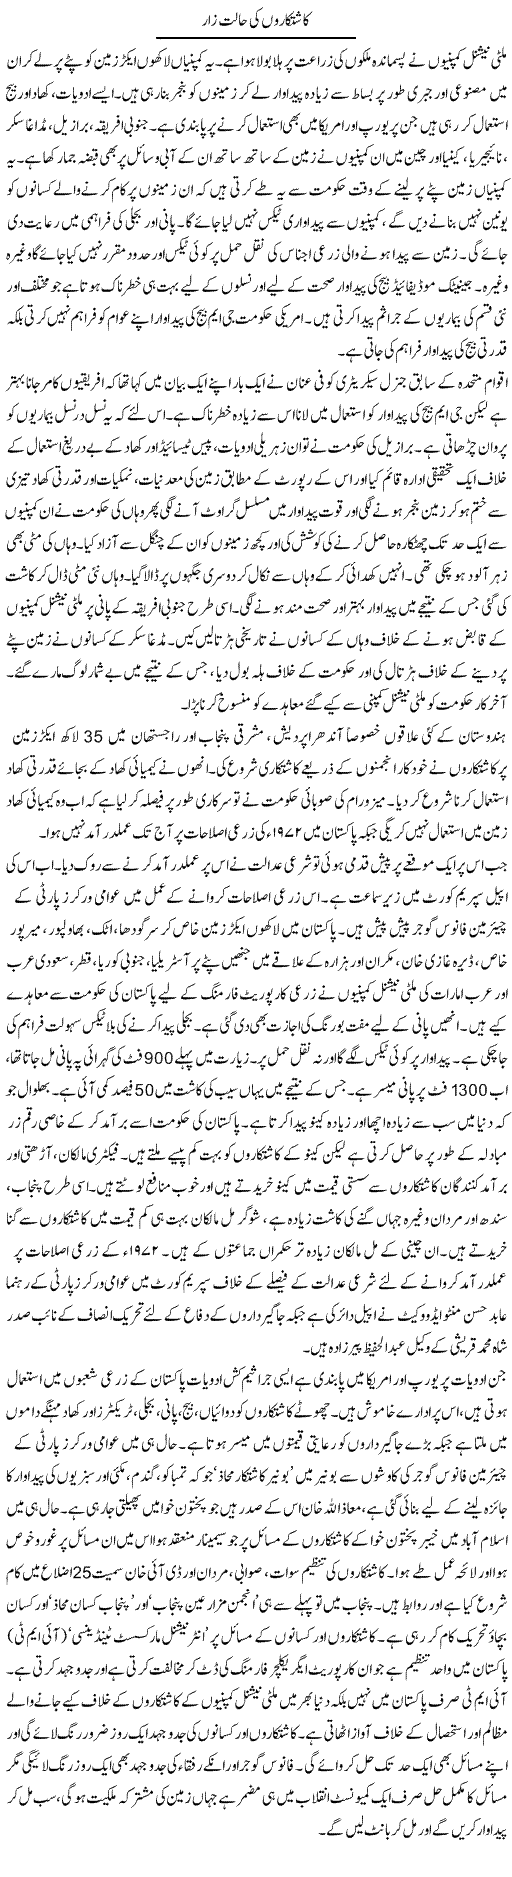 Kashtkaroon Ki Halat e Zaar | Zubair Rehman | Daily Urdu Columns